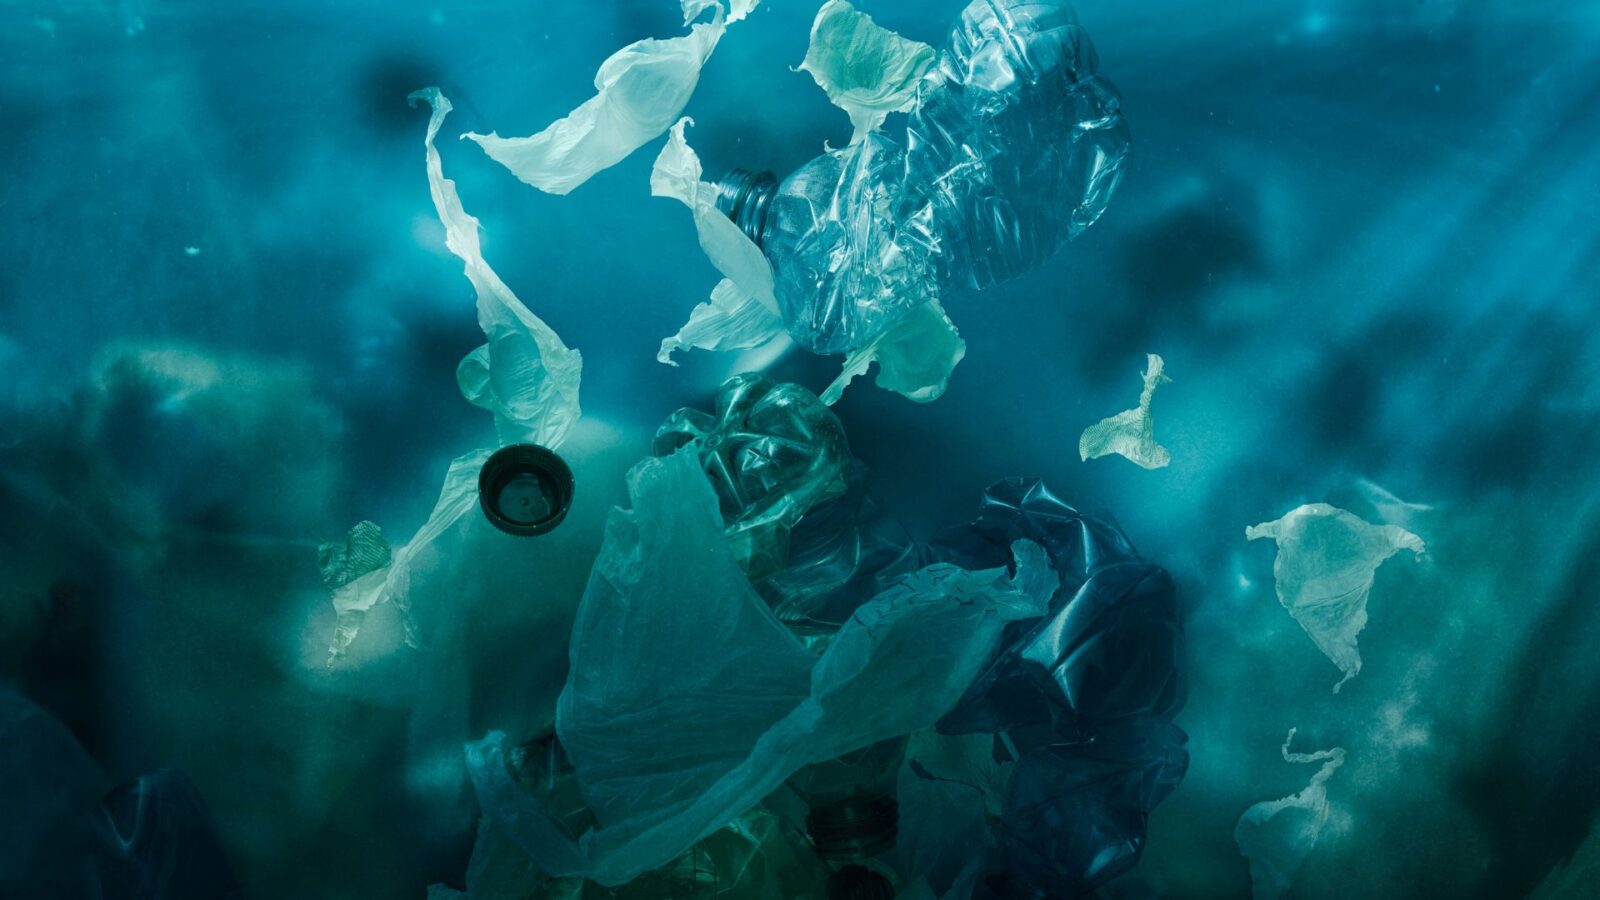 Plastic underwater